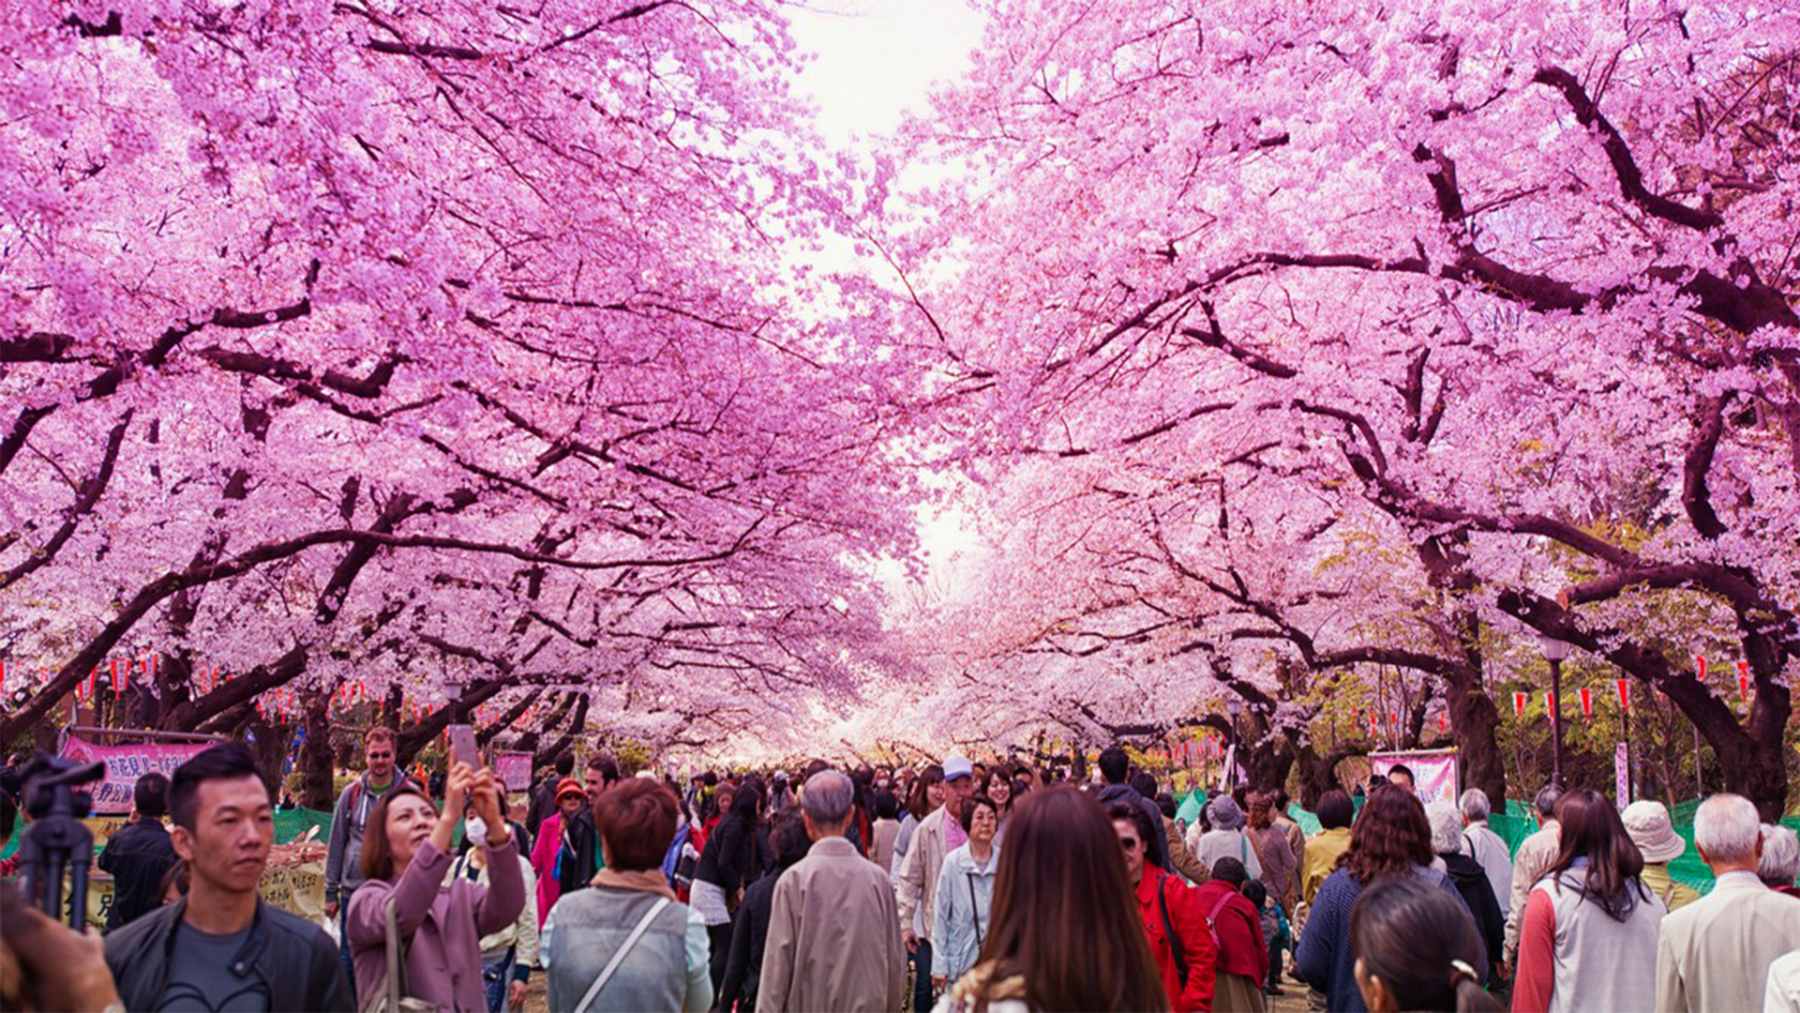 semana dorada de japon golden week con los arboles cerezos rosas